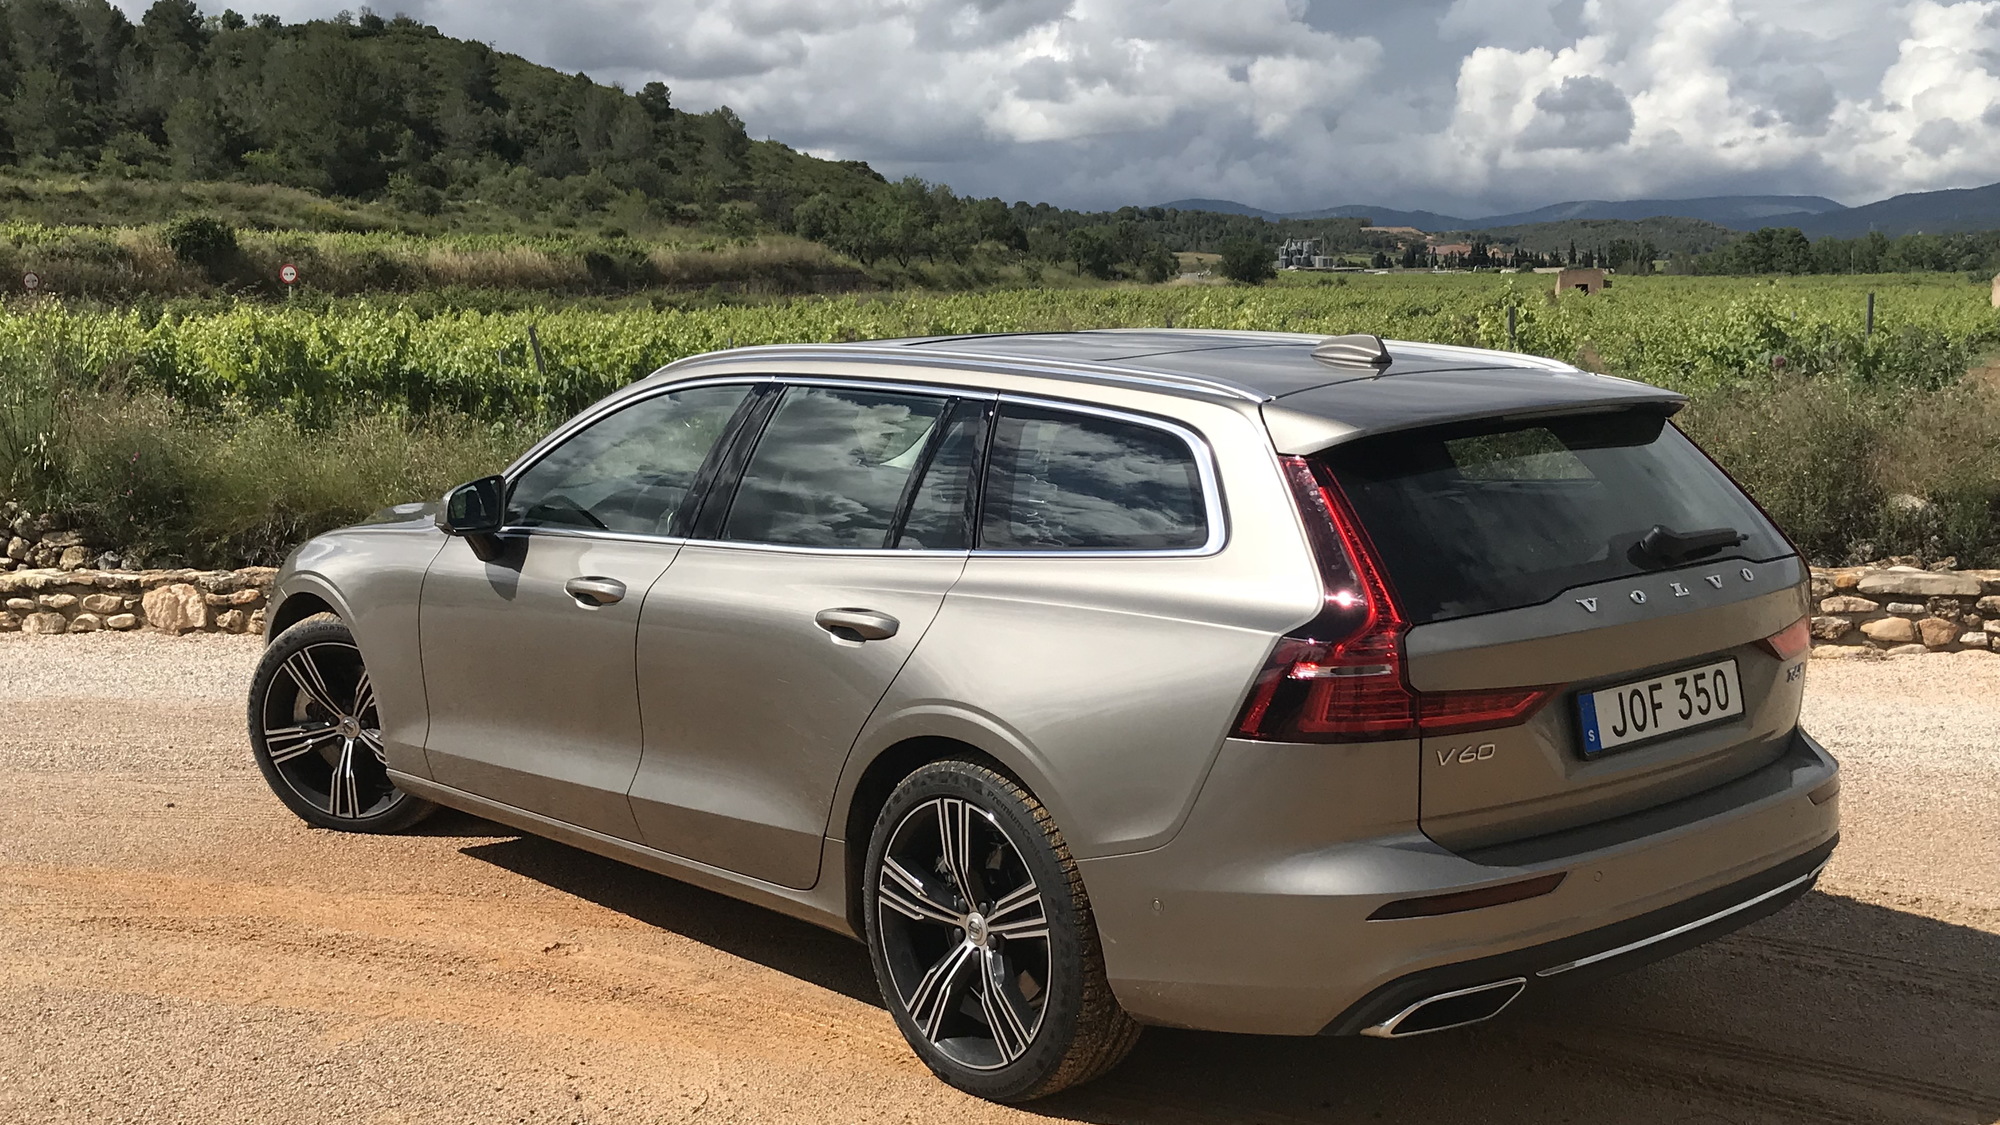 2019 Volvo V60, Tarragona, Spain, June 2018